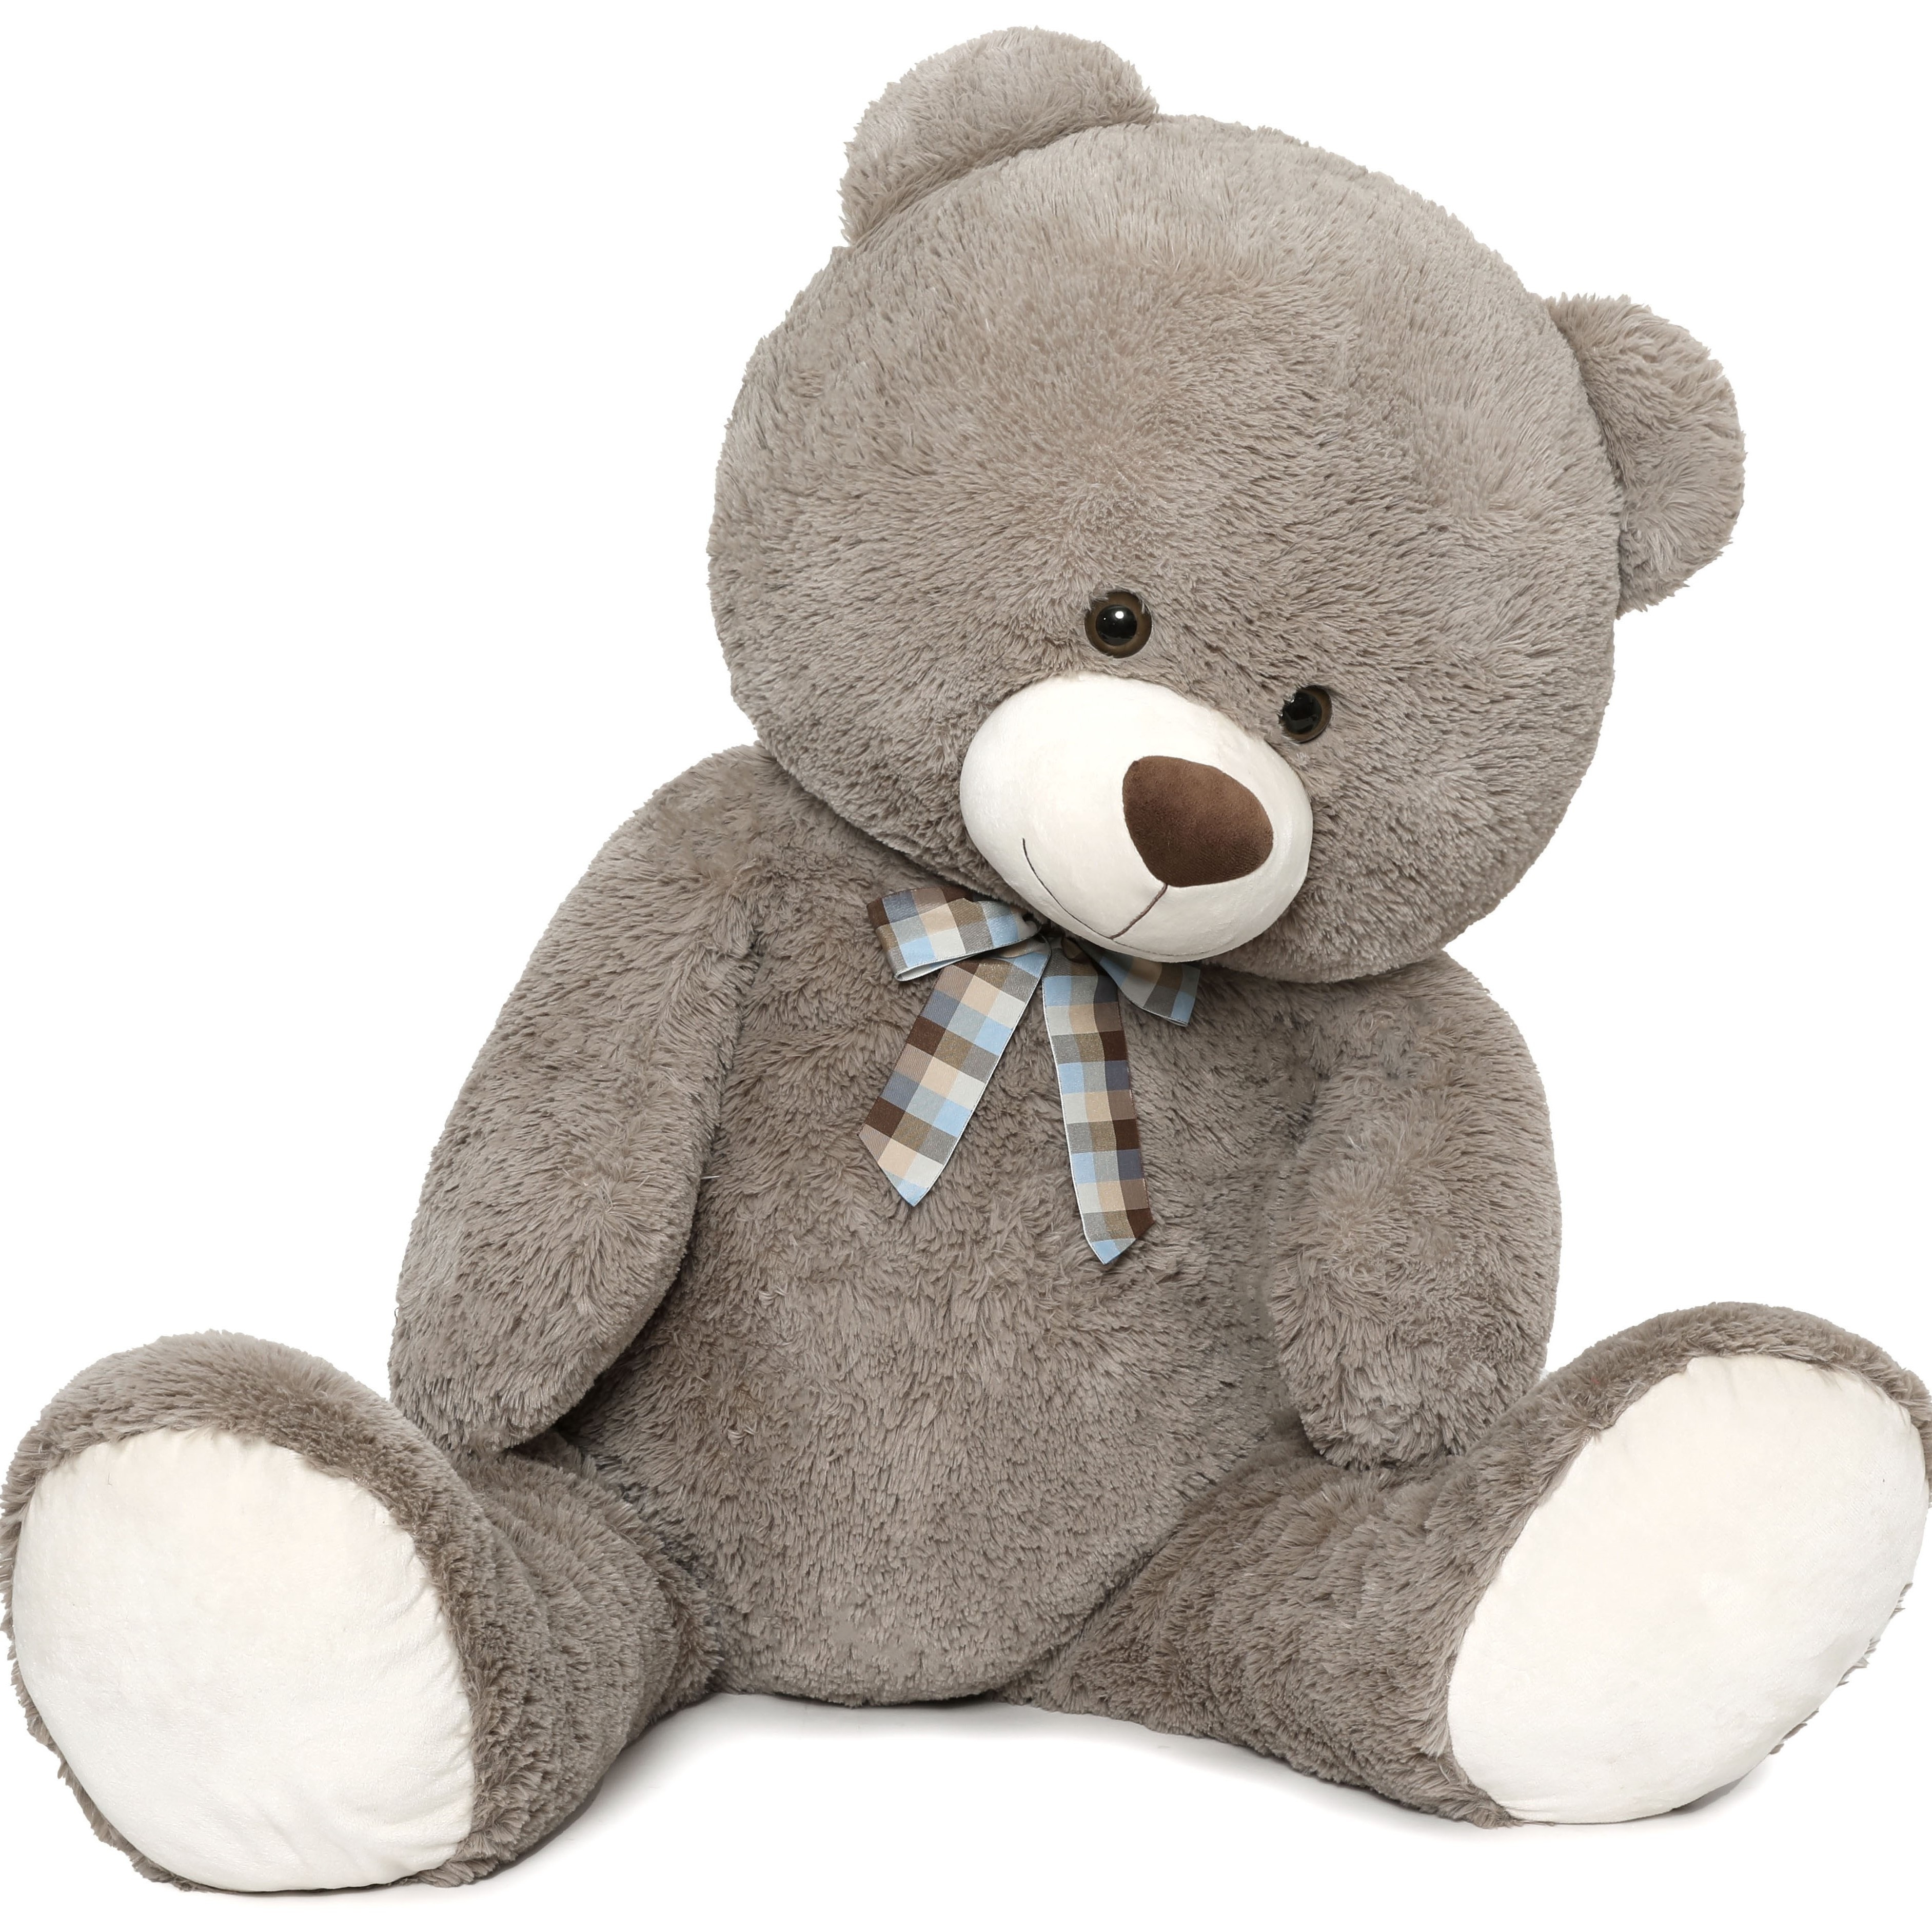 

47 Inch Big Teddy Bear Stuffed Animals, 4 Feet Soft Teddy Bear With Bow Tie, Plush Gift For Kid